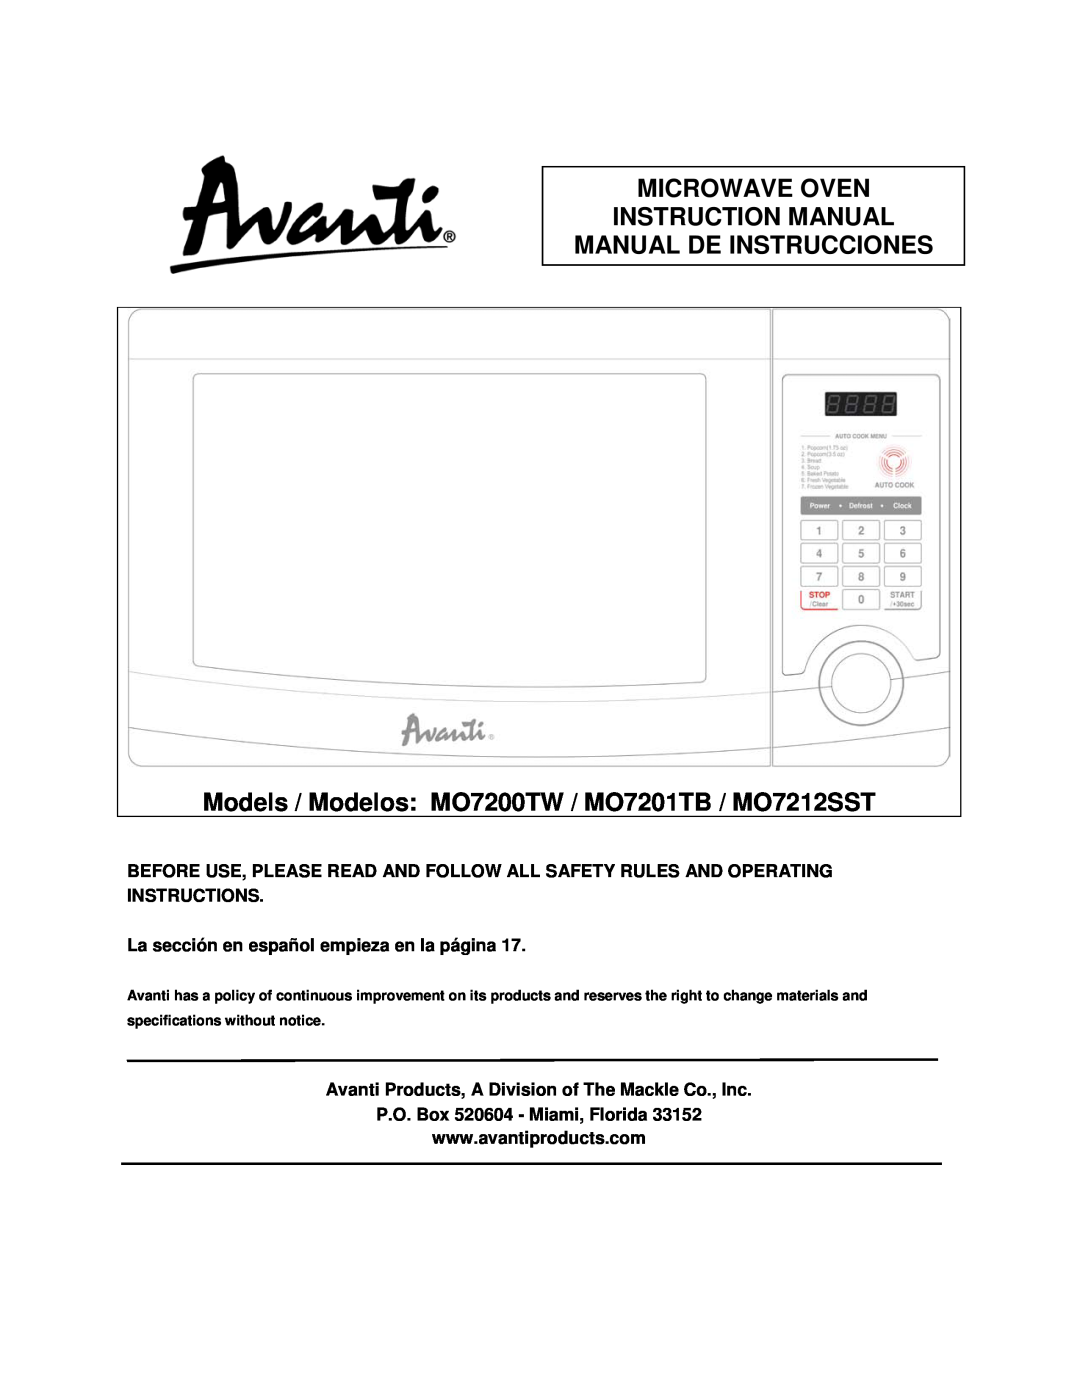 Avanti operating instructions Manual De Instrucciones, Models / Modelos MO7200TW / MO7201TB / MO7212SST 